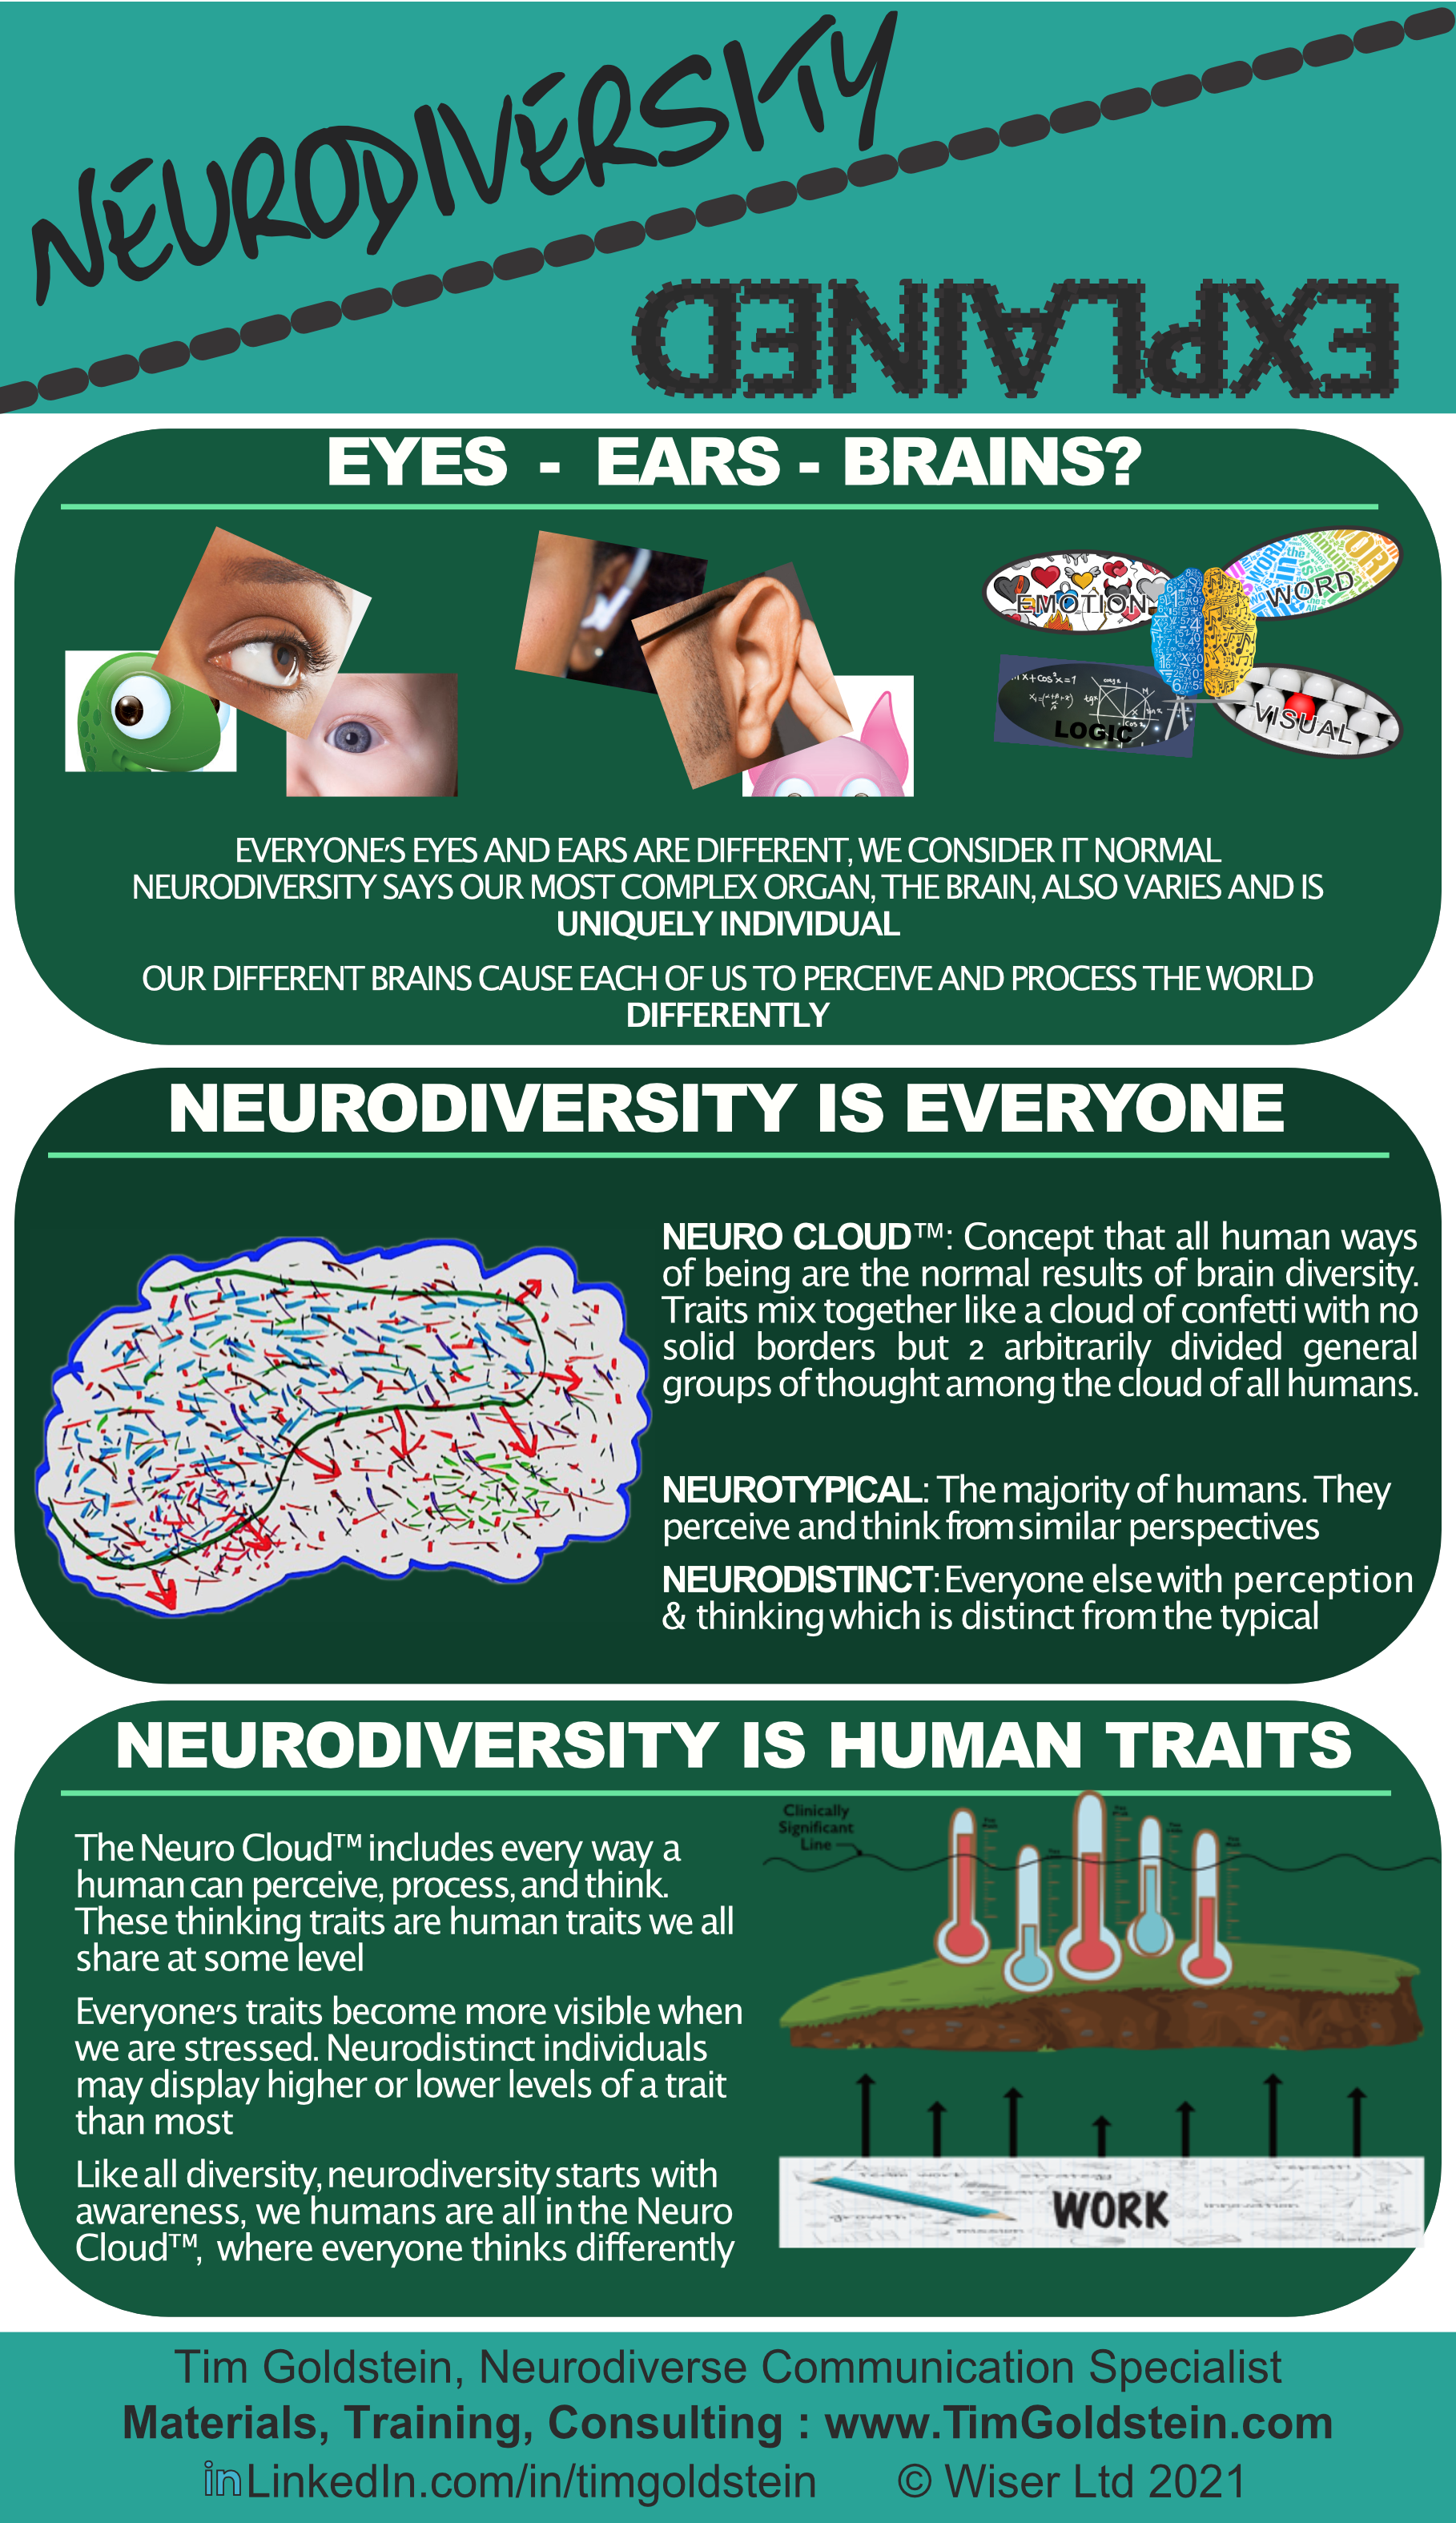 Neurodiversity explained